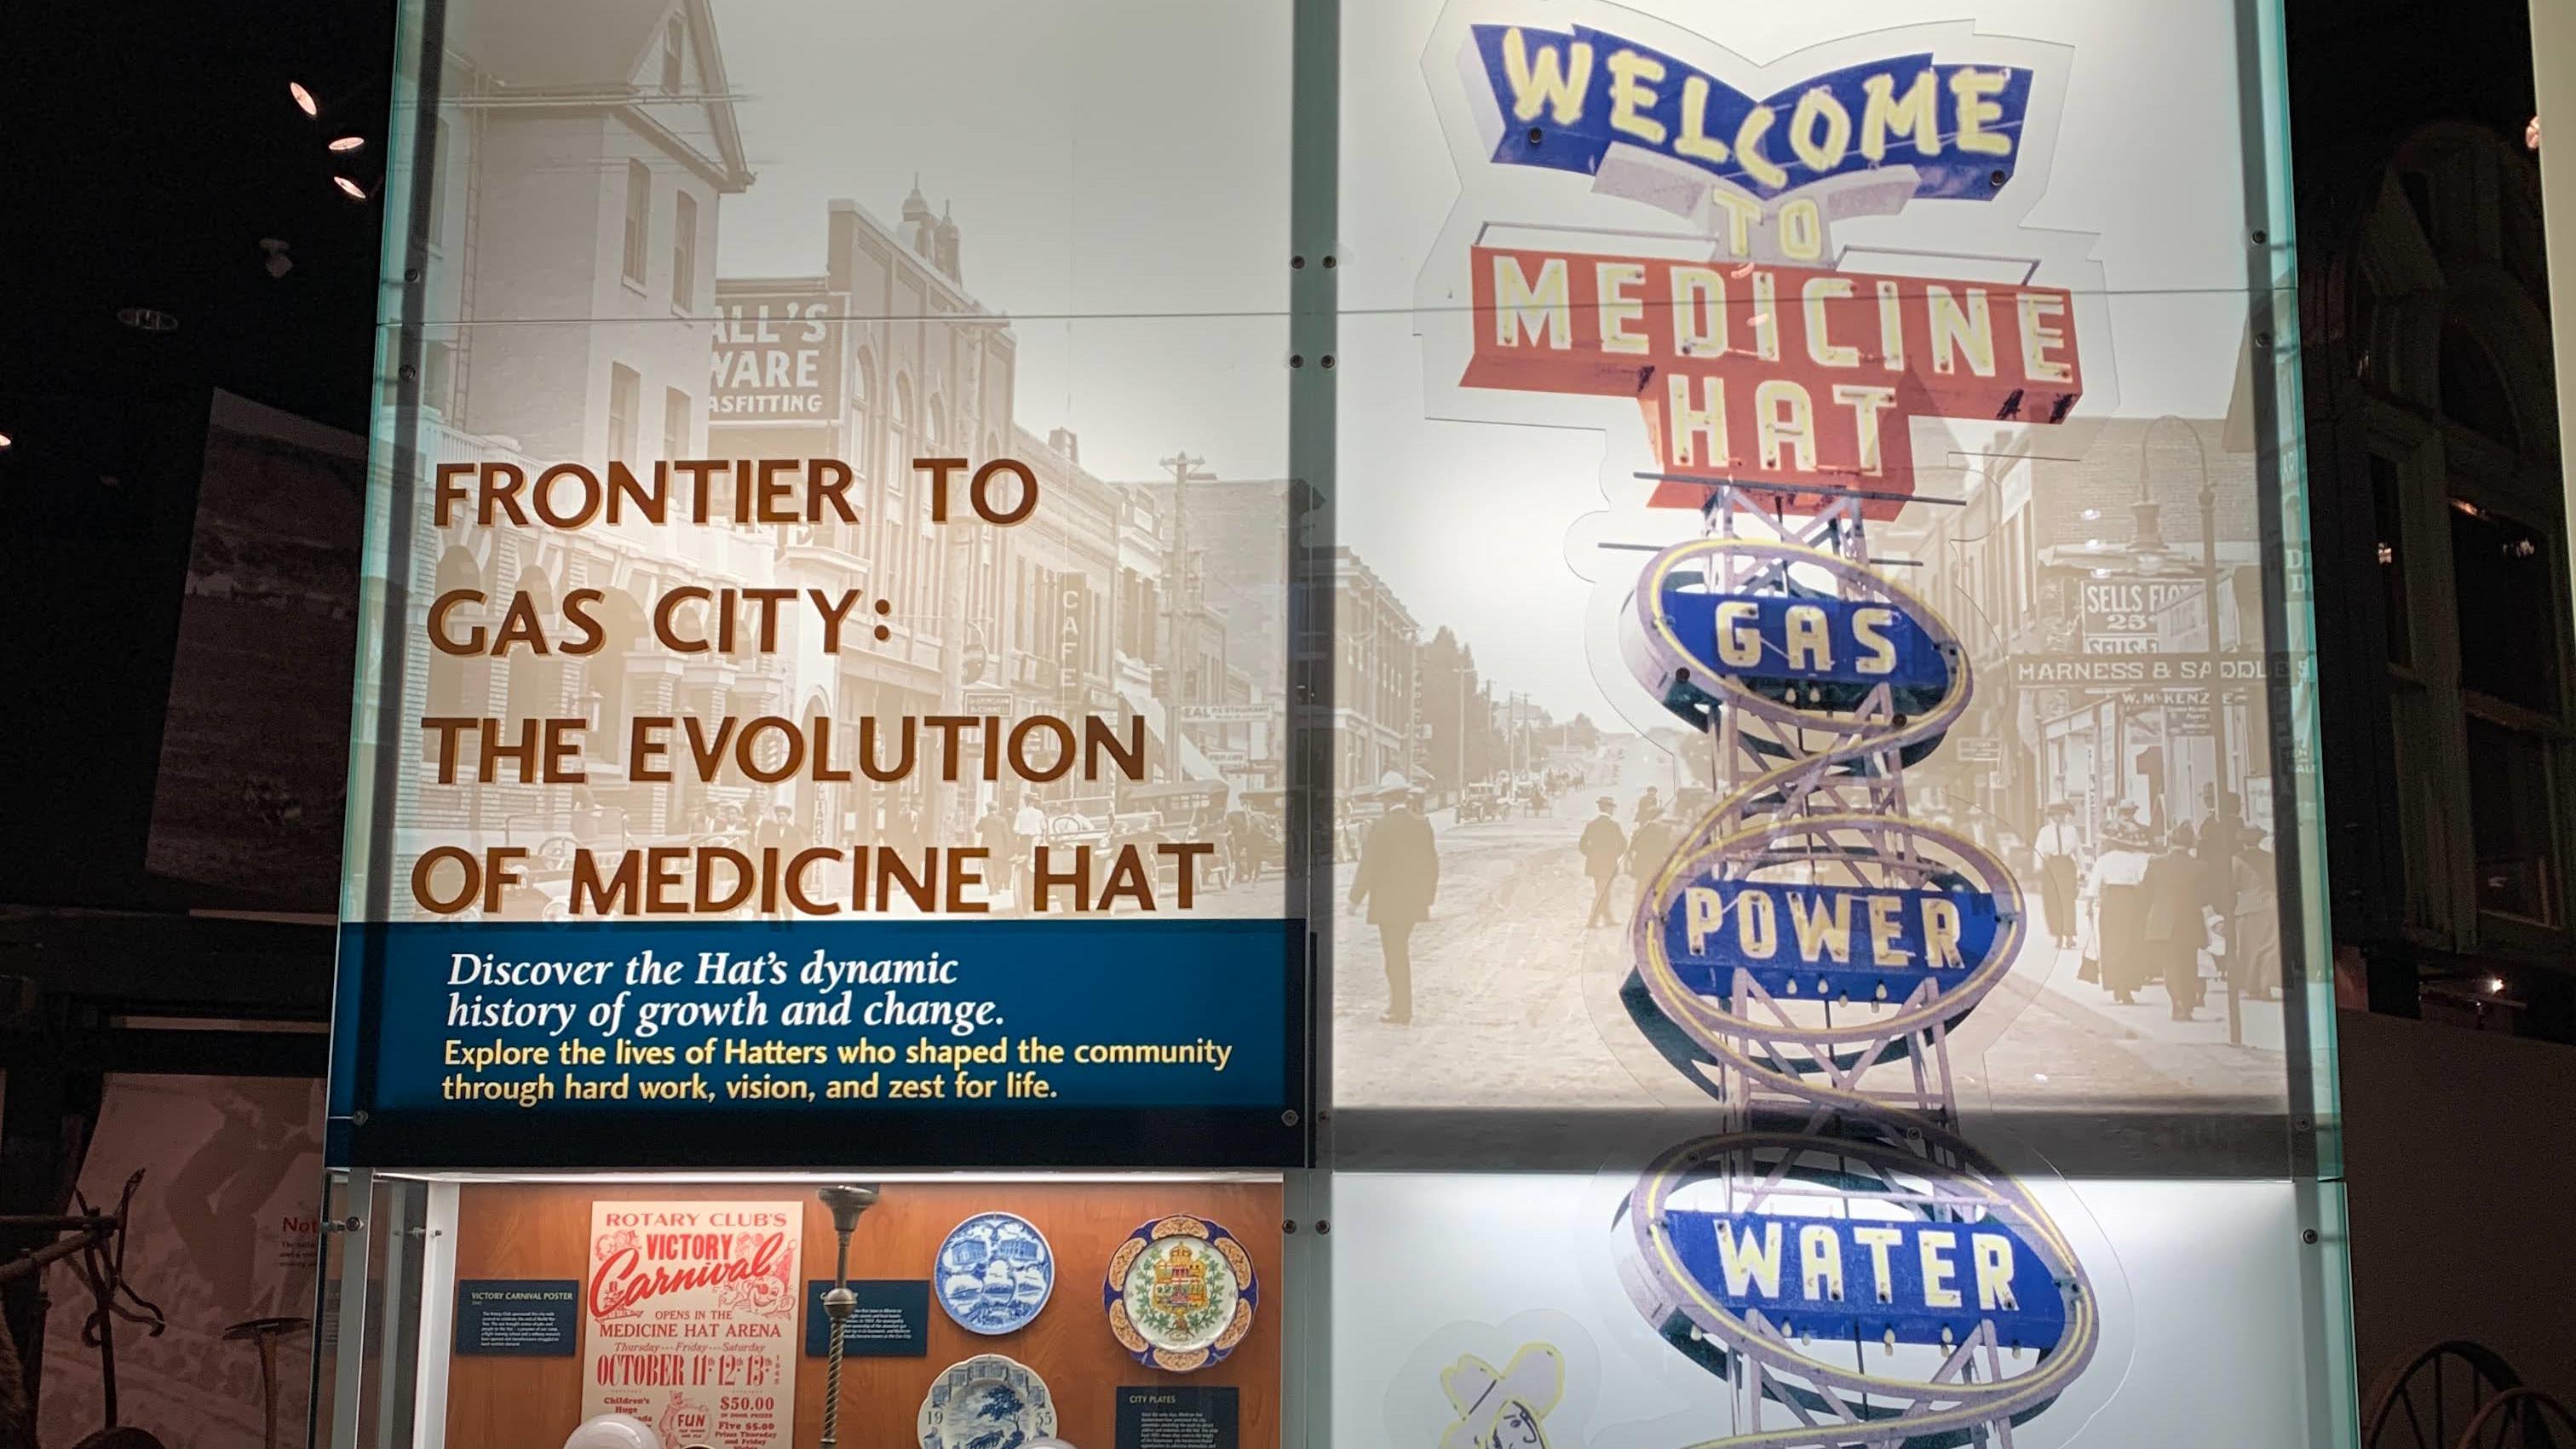 Une reproduction de la pancarte qui souhaite la bienvenue aux visiteurs dans la ville de Medicine Hat.